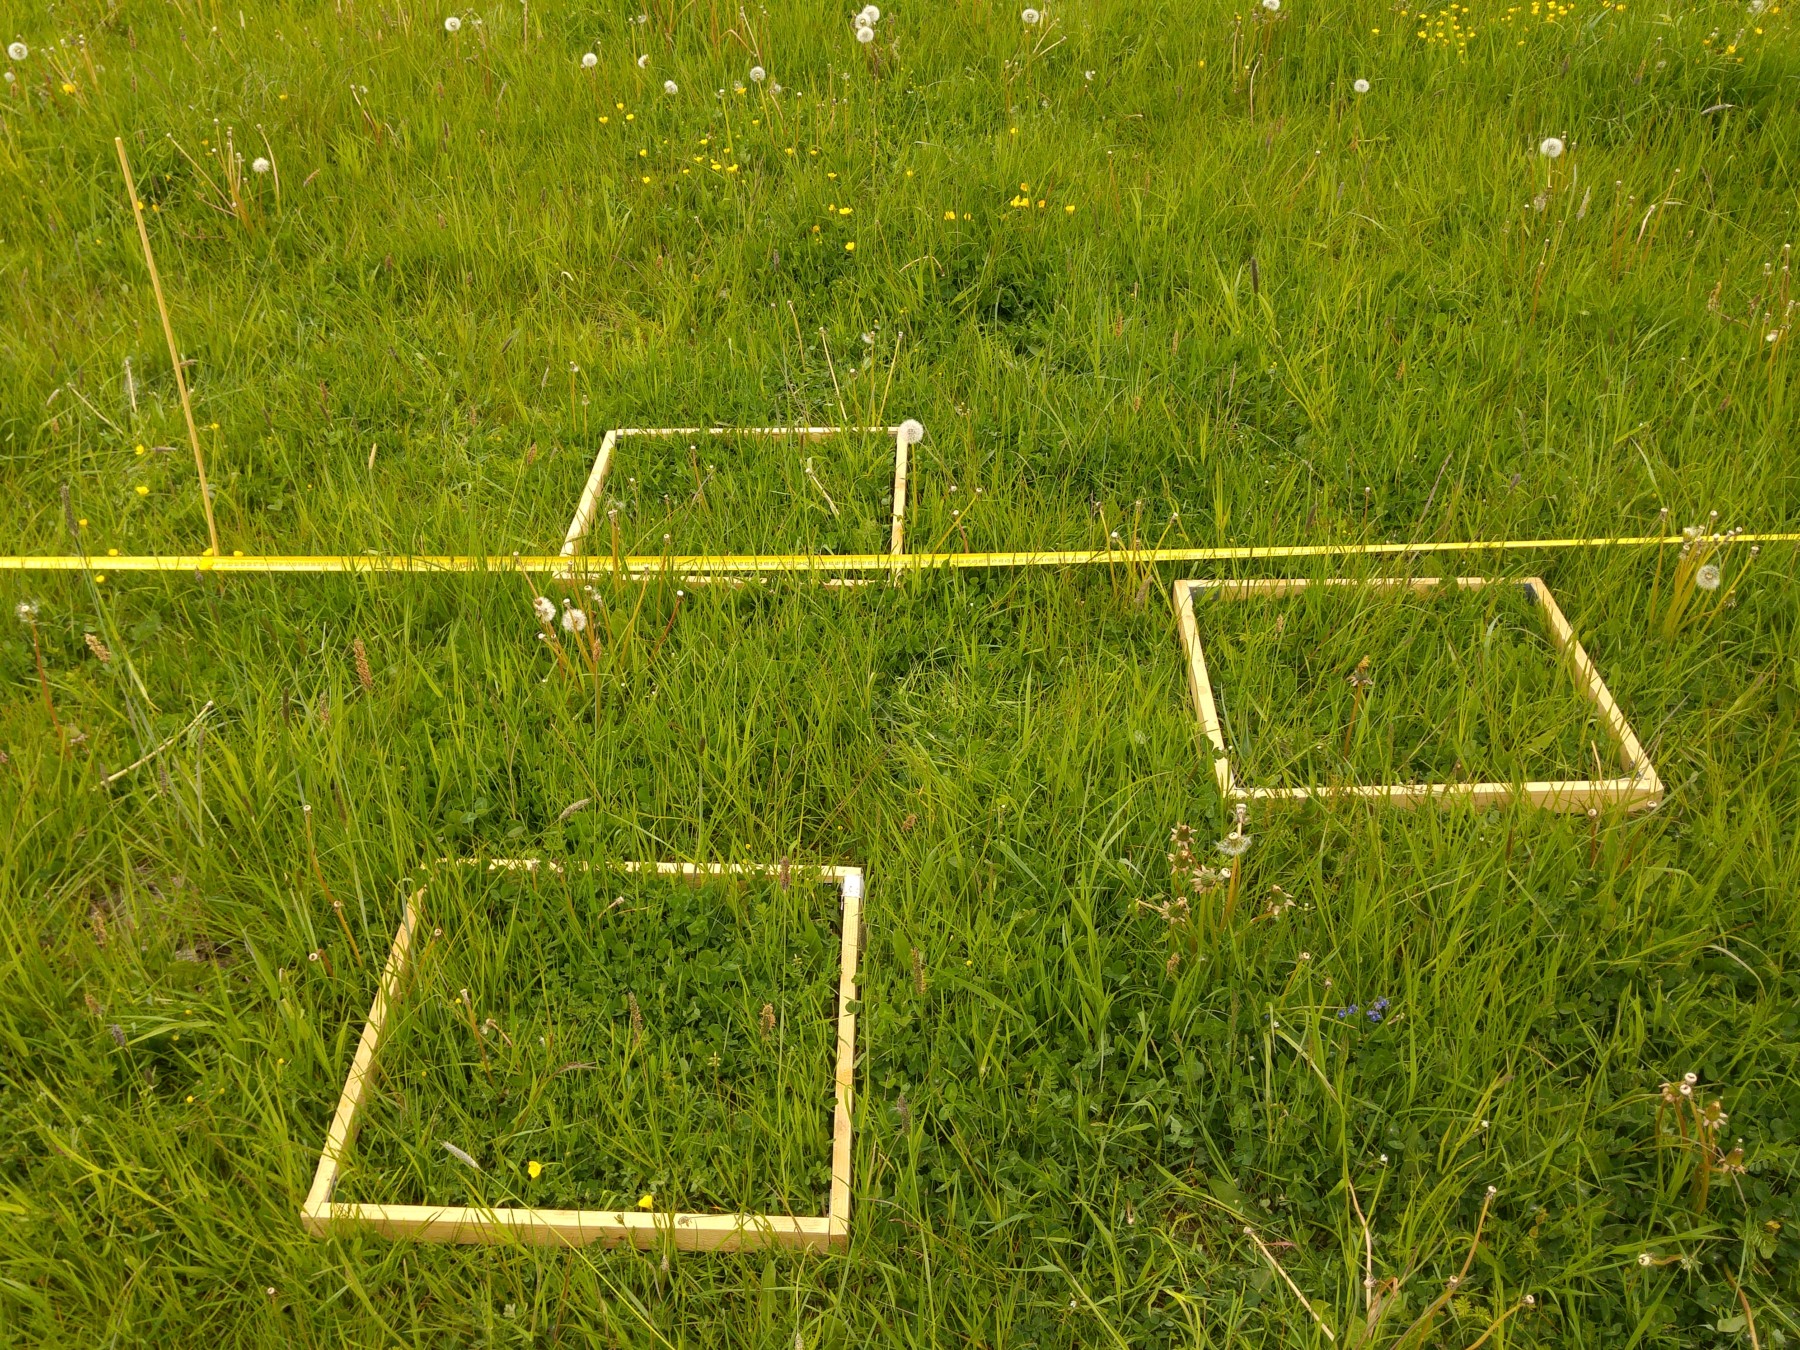 Abbildung: Das Foto zeigt eine grüne Wiese, auf der drei gelbe quadratische Rahmen liegen, die Beprobungsflächen eingrenzen. Quer durchs Bild zieht sich ein gelbes Band zur Umgrenzung eines Plots. Links oben im Bild steckt ein dünner Markierungs-Stab im Boden.